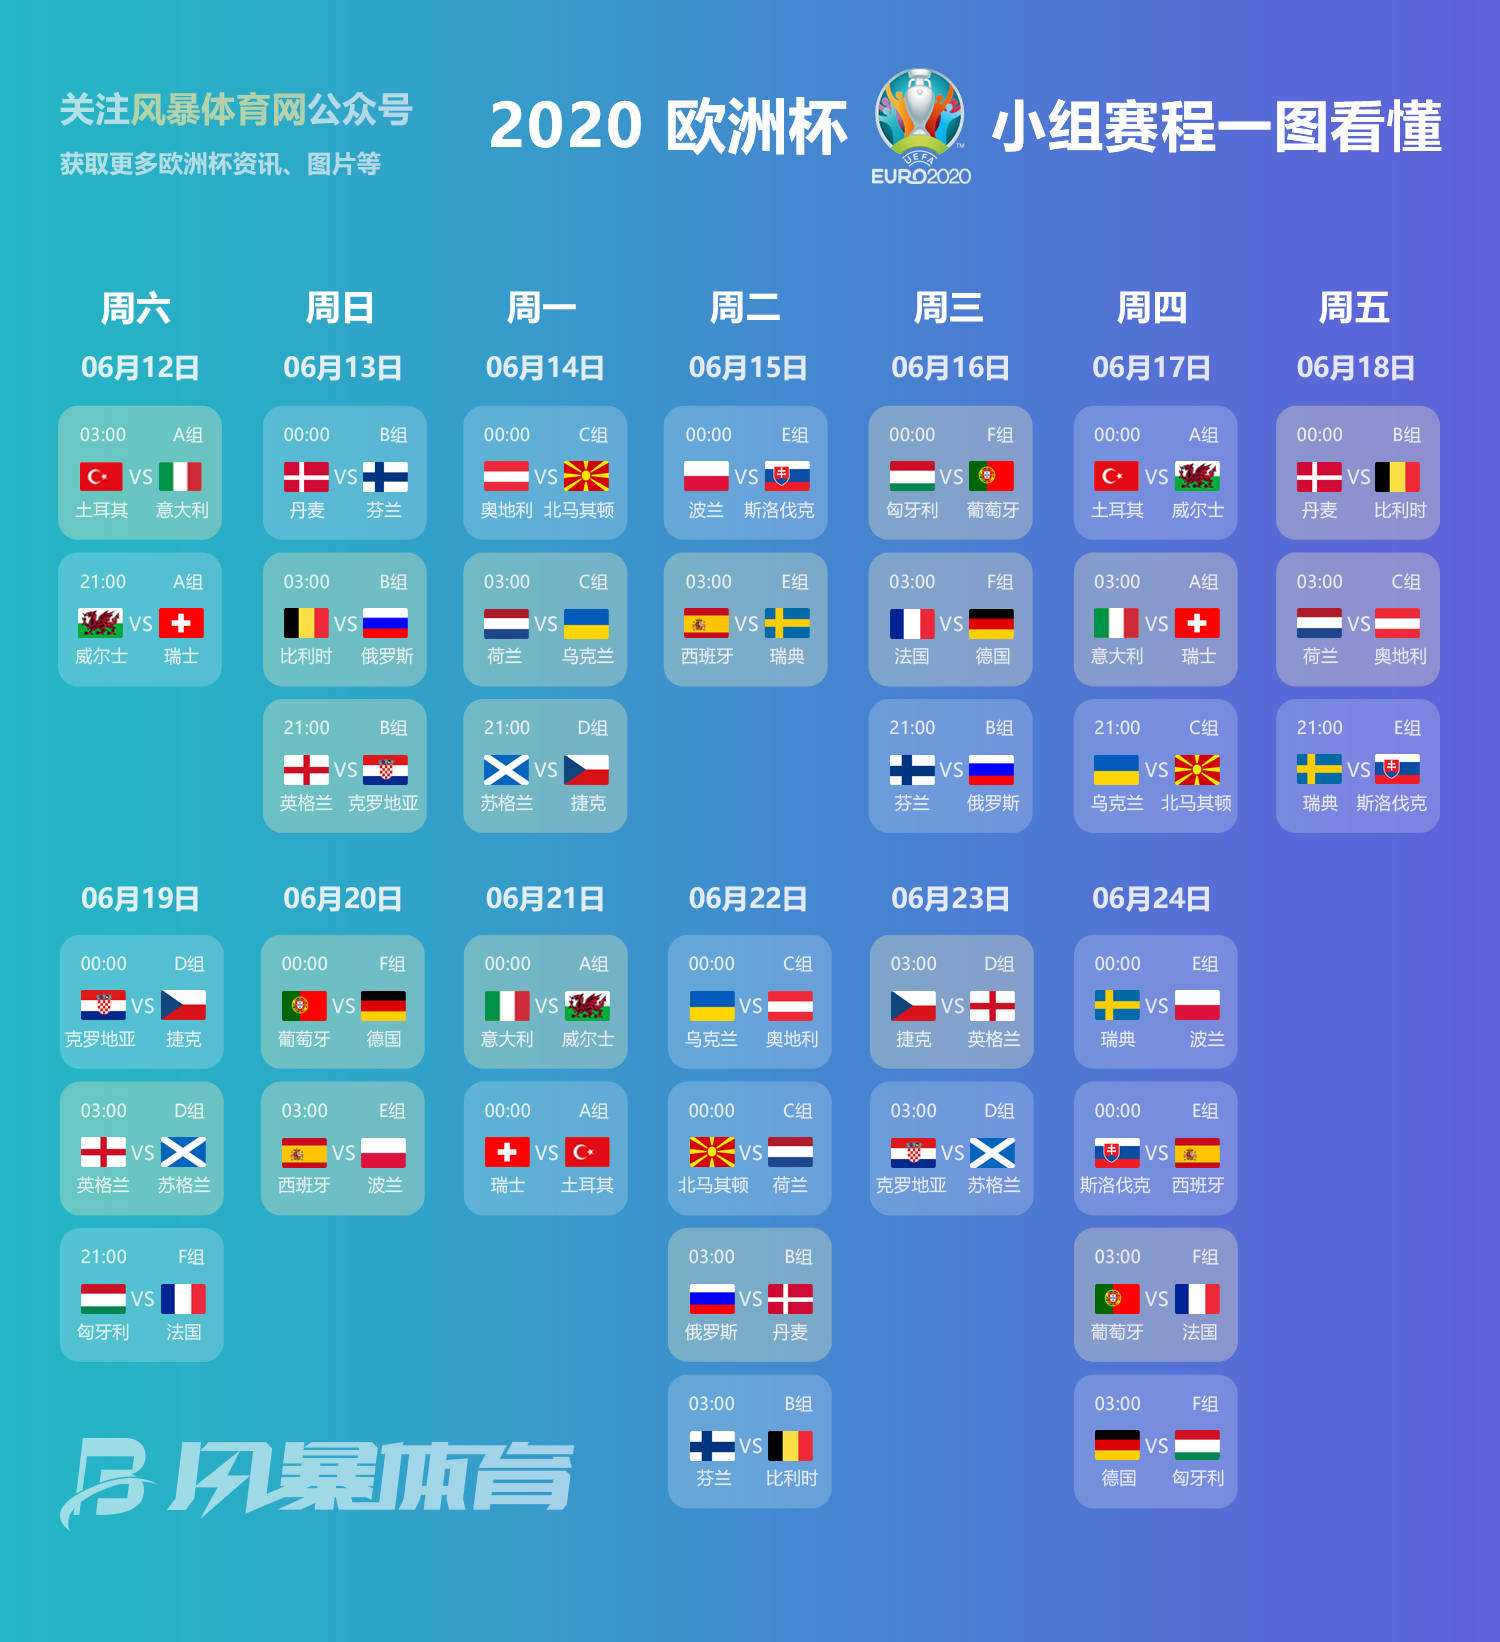 2020年欧洲杯赛程，2020年欧洲杯赛程比赛场地